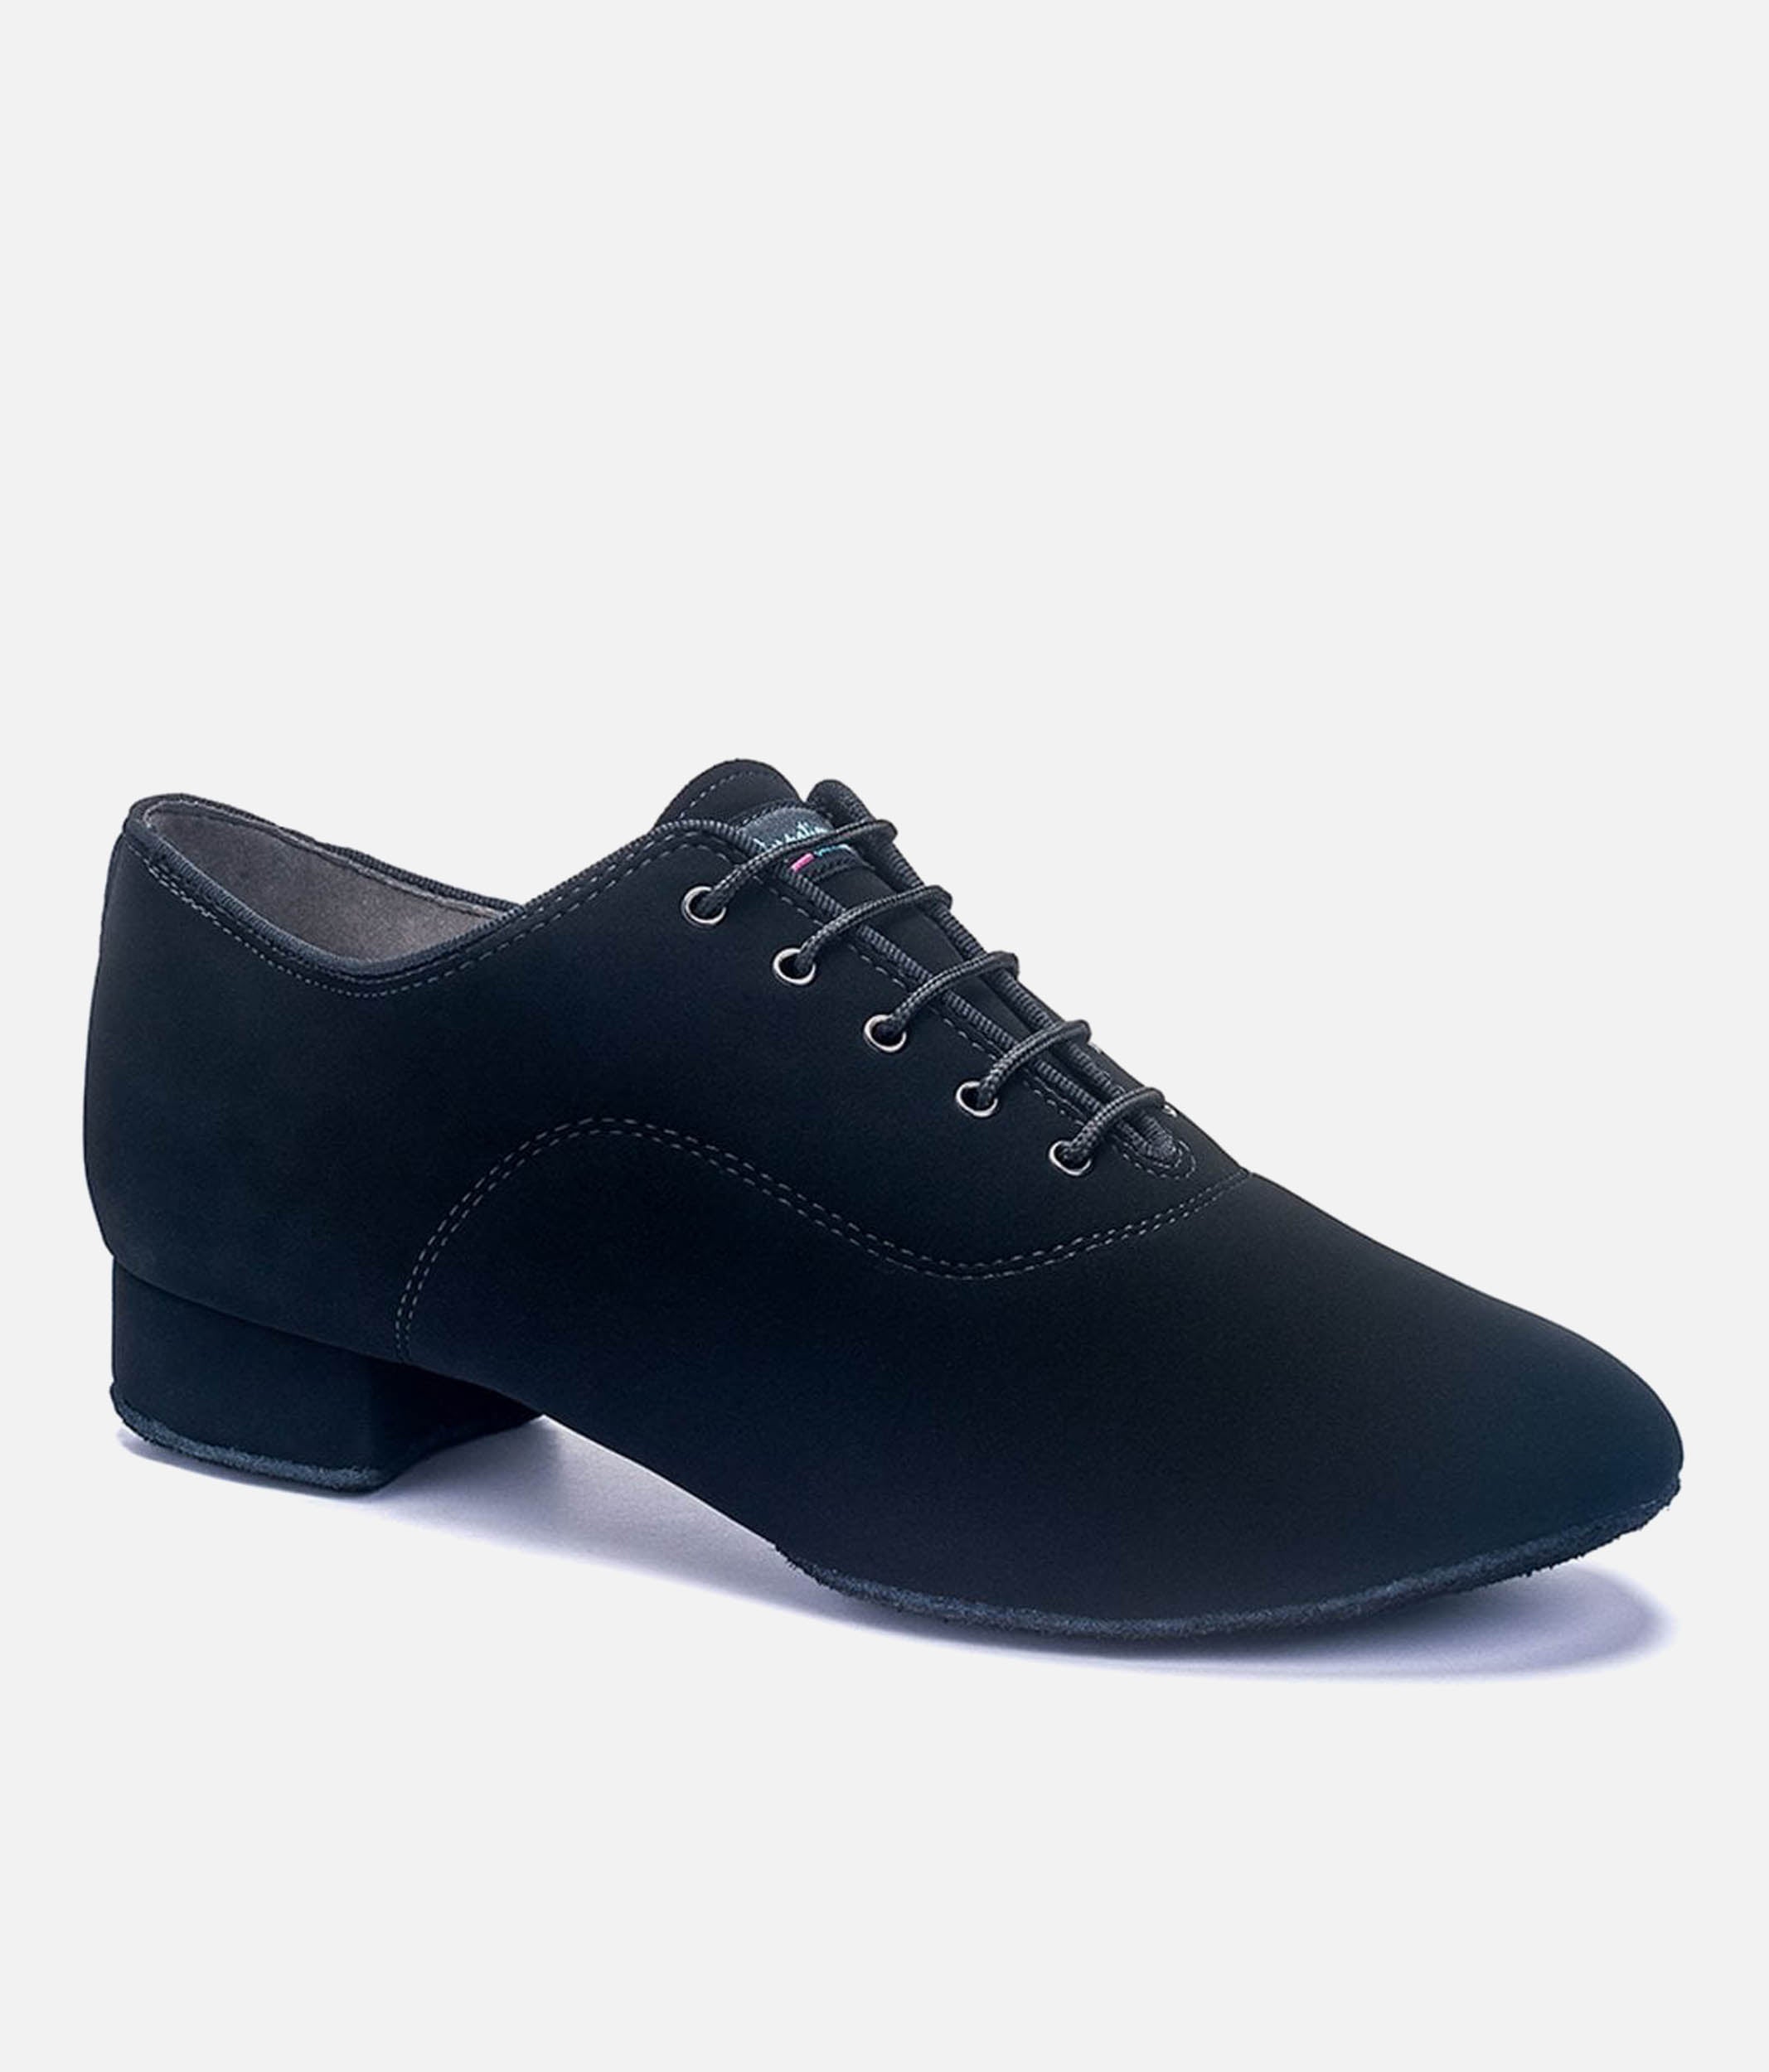 Men's Ballroom Dance Shoes, Split Sole - Contra Pro